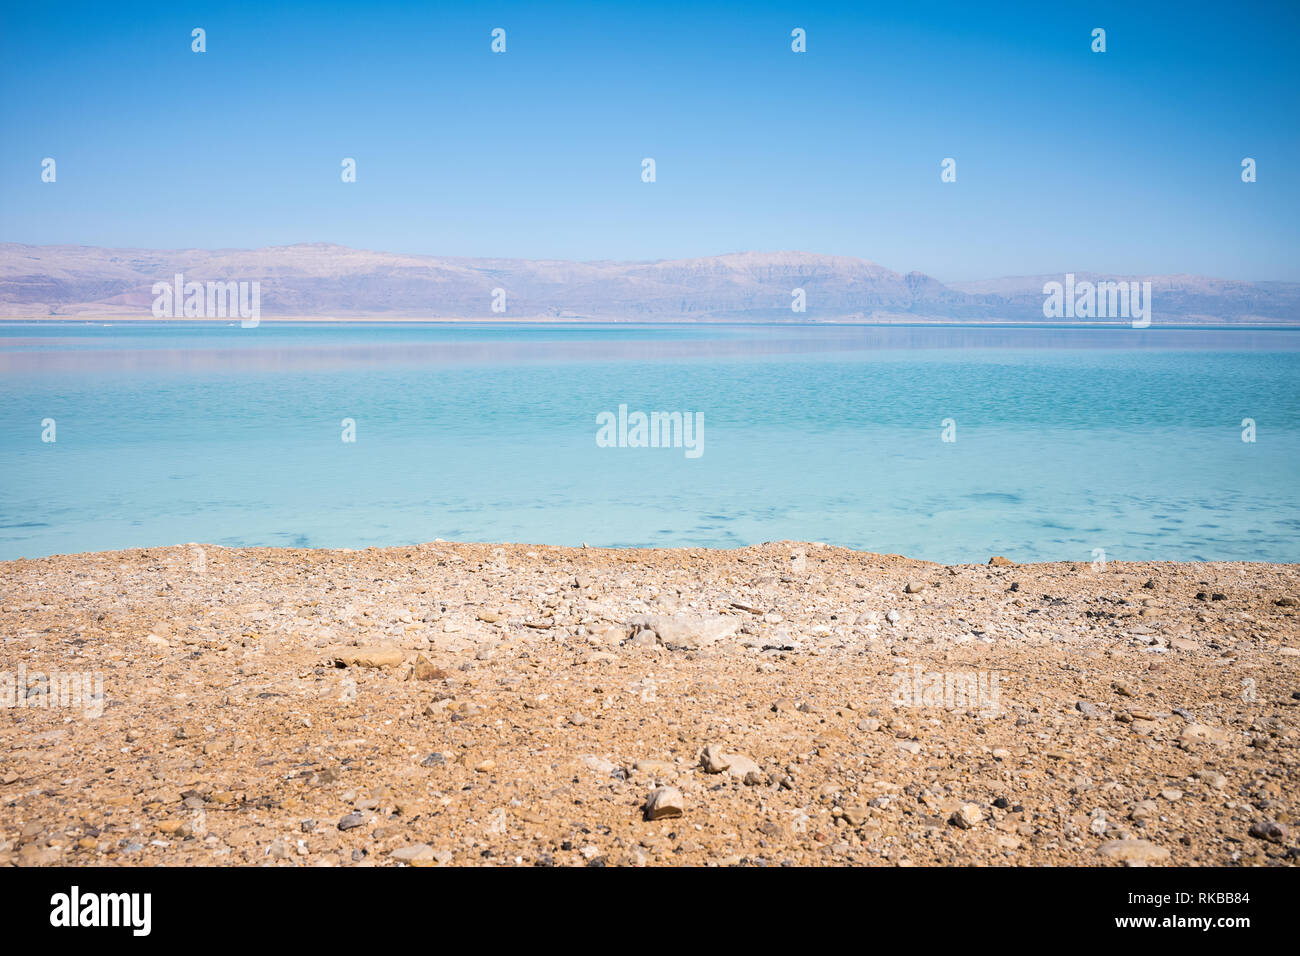 Paisaje del Mar Muerto, los fracasos del suelo, ilustrando una catástrofe ambiental en el Mar Muerto para Israel y Jordania Foto de stock